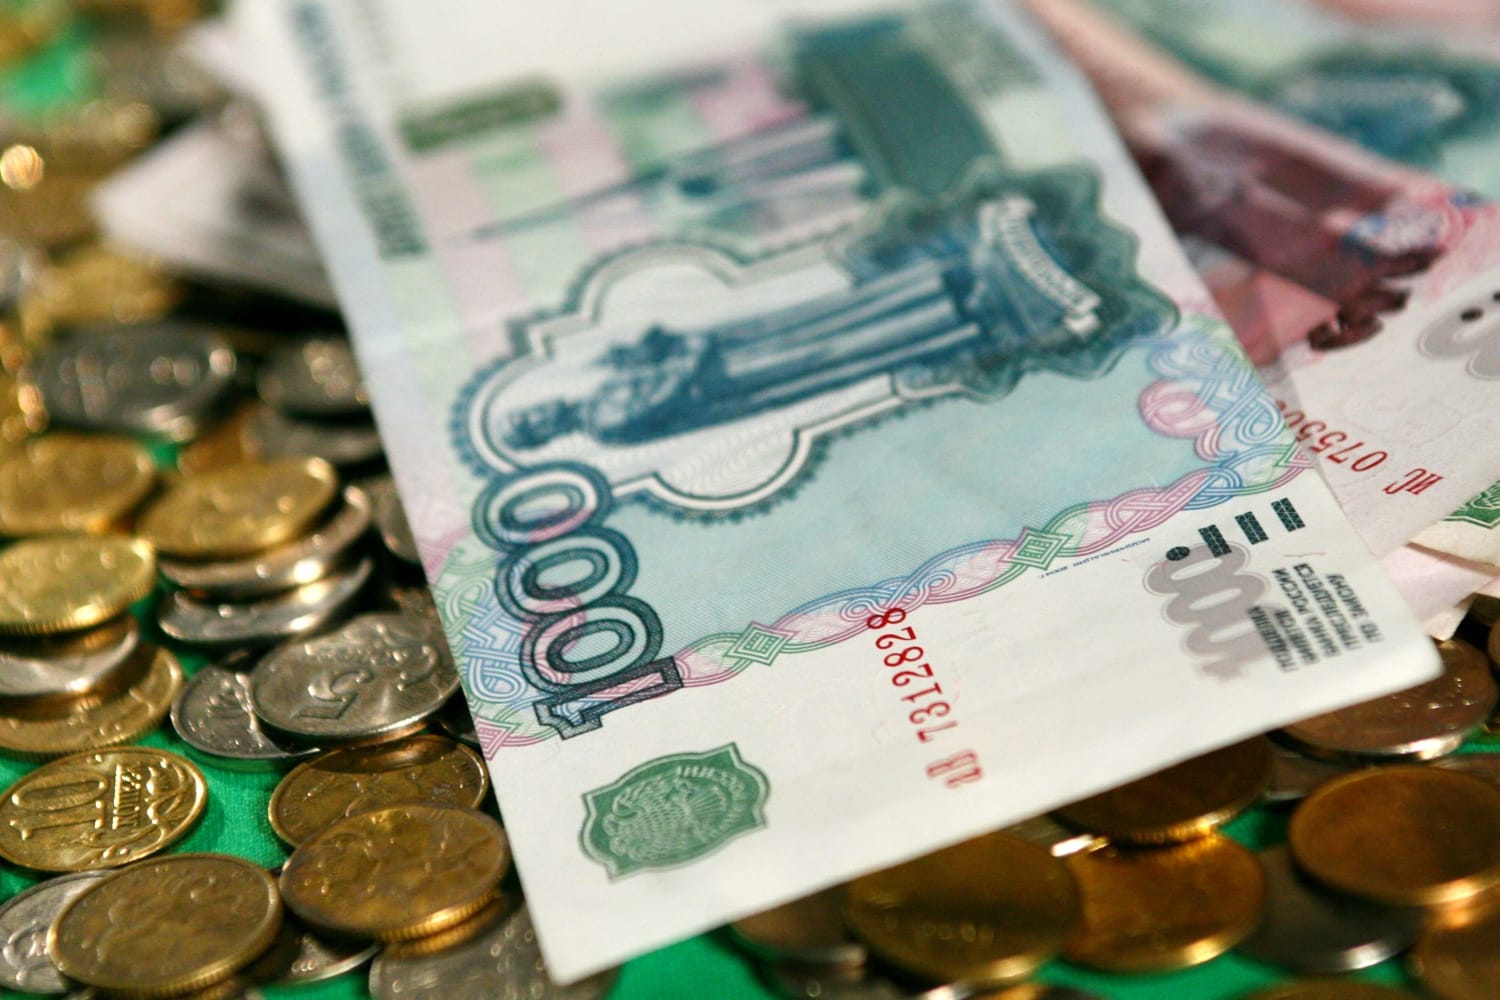 Курс рубля на момент 12 нобря 2018 потерял в цене, курс на 13 нобря 2018 года составит 67 рублей и 52 копейки. Доллар продолжает укрепляться.